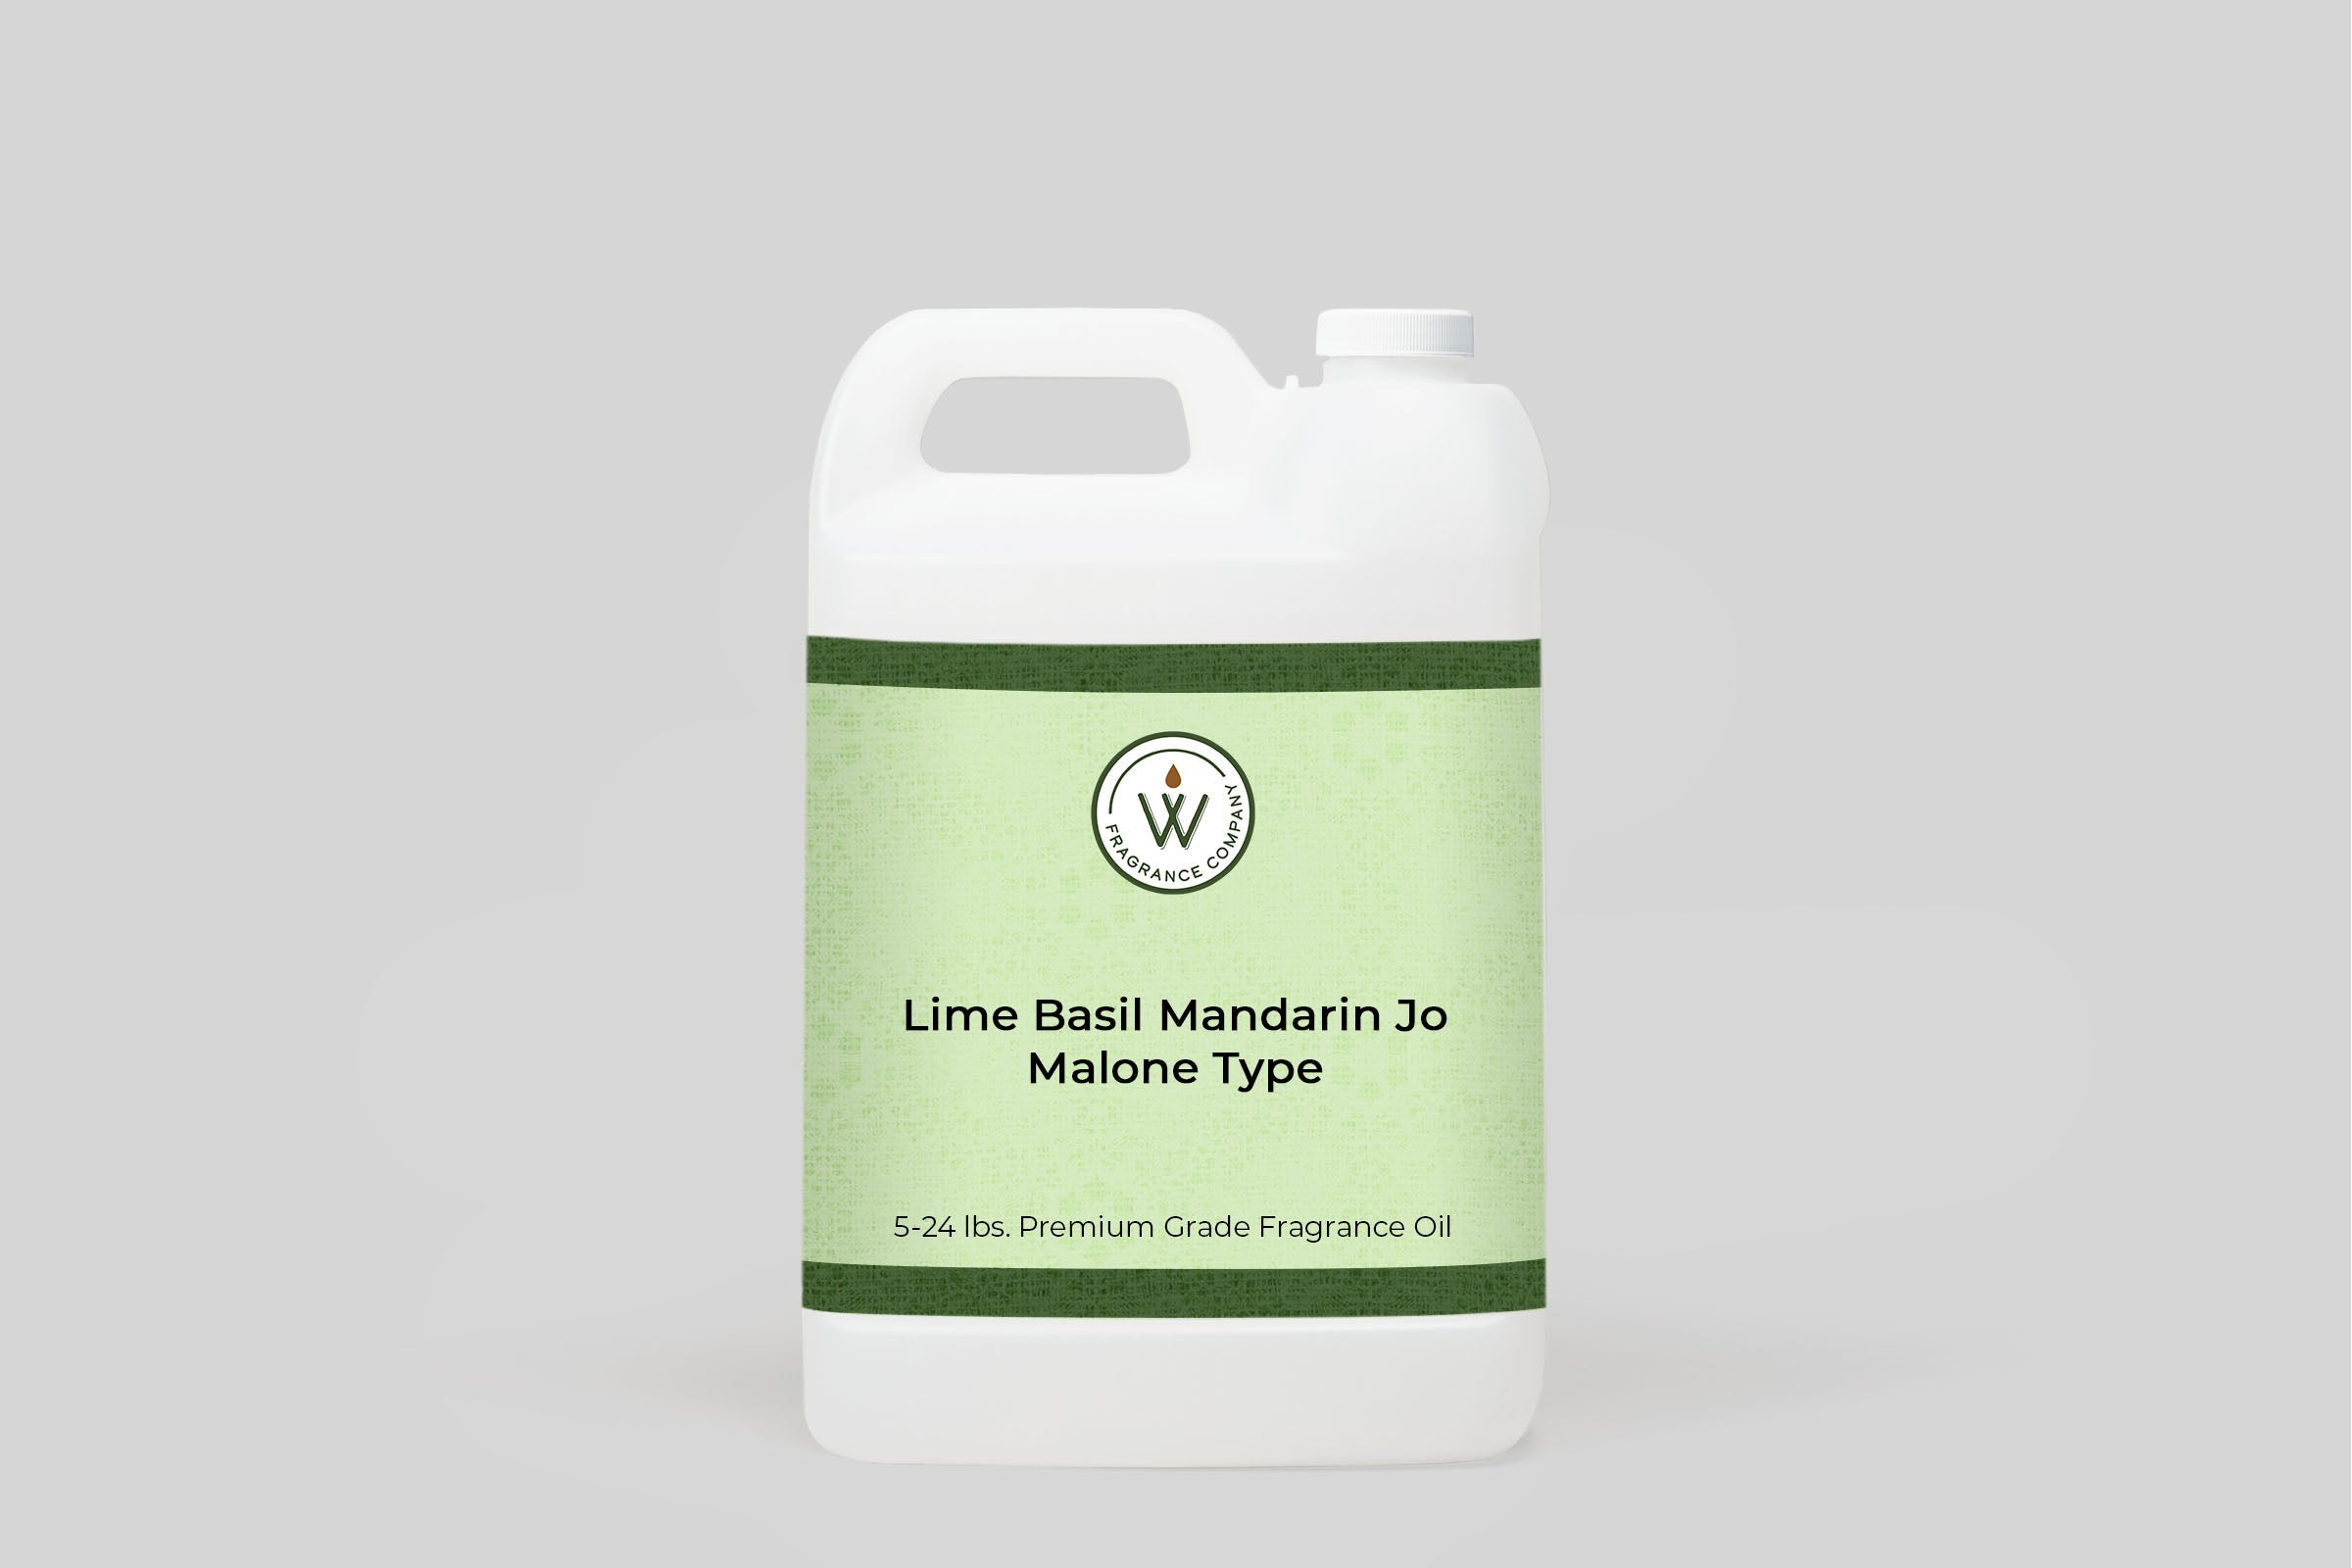 Lime Basil Mandarin Jo Malone Type Fragrance Oil